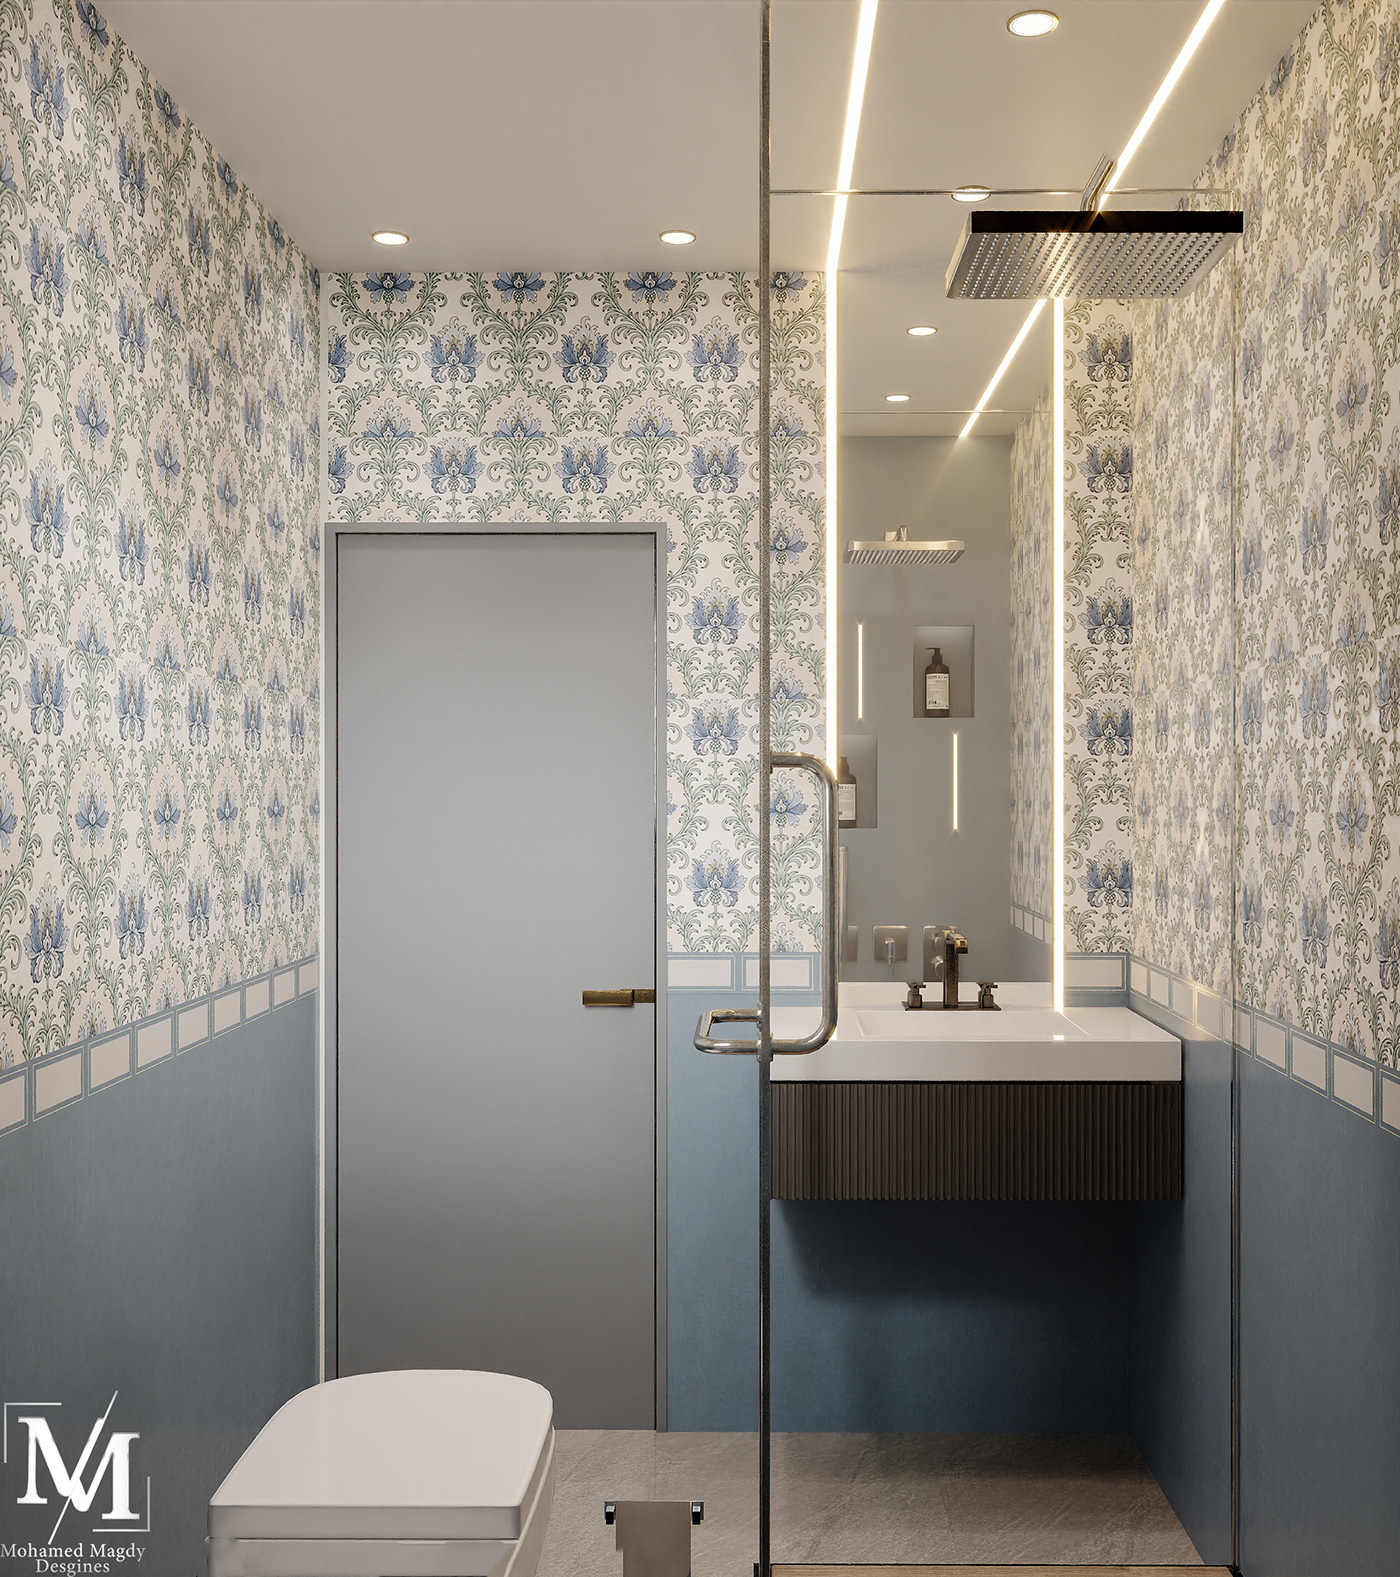 ceramic art bathroom design bathroom Interior architecture corona Render economical design